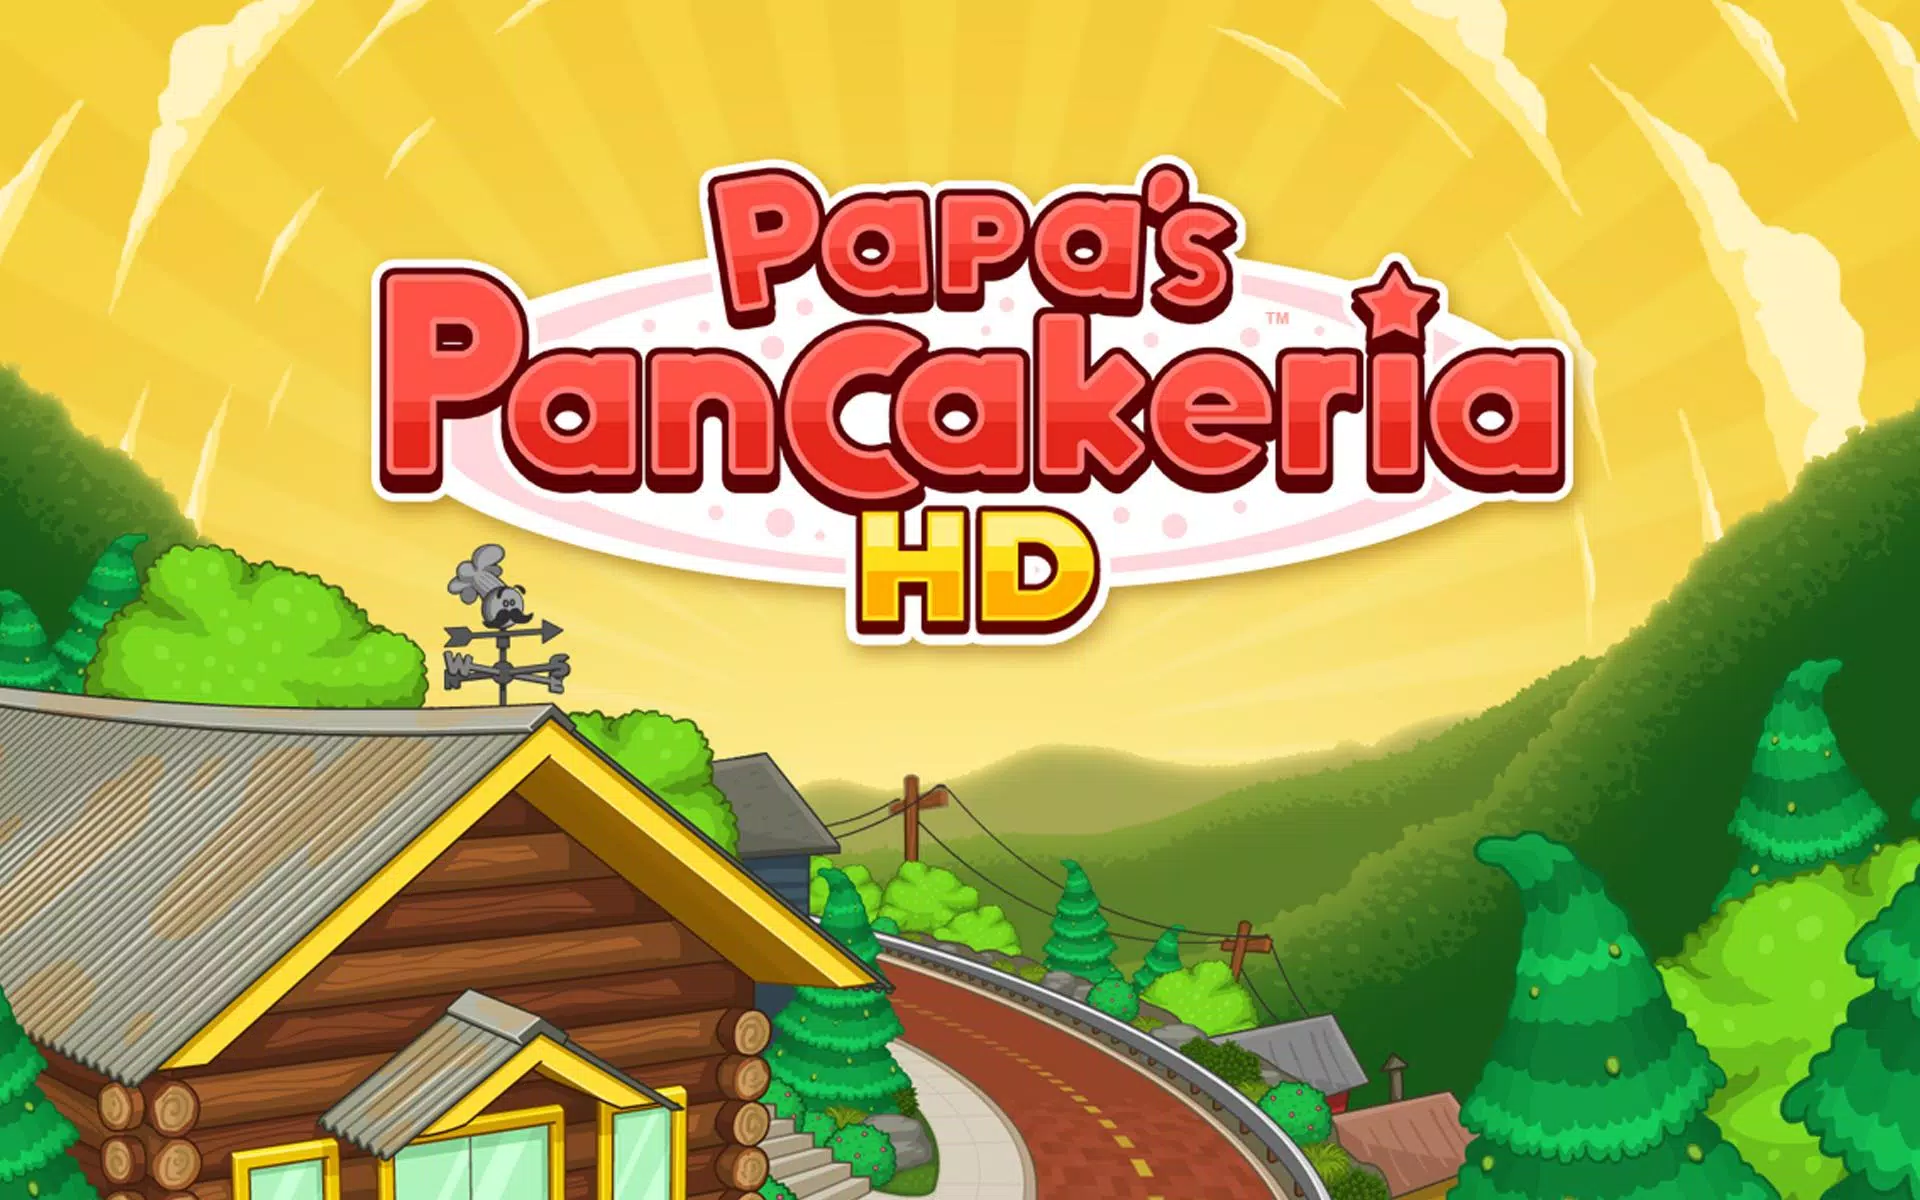 Última Versão de Papa's Bakeria To Go! 1.0.3 para Android